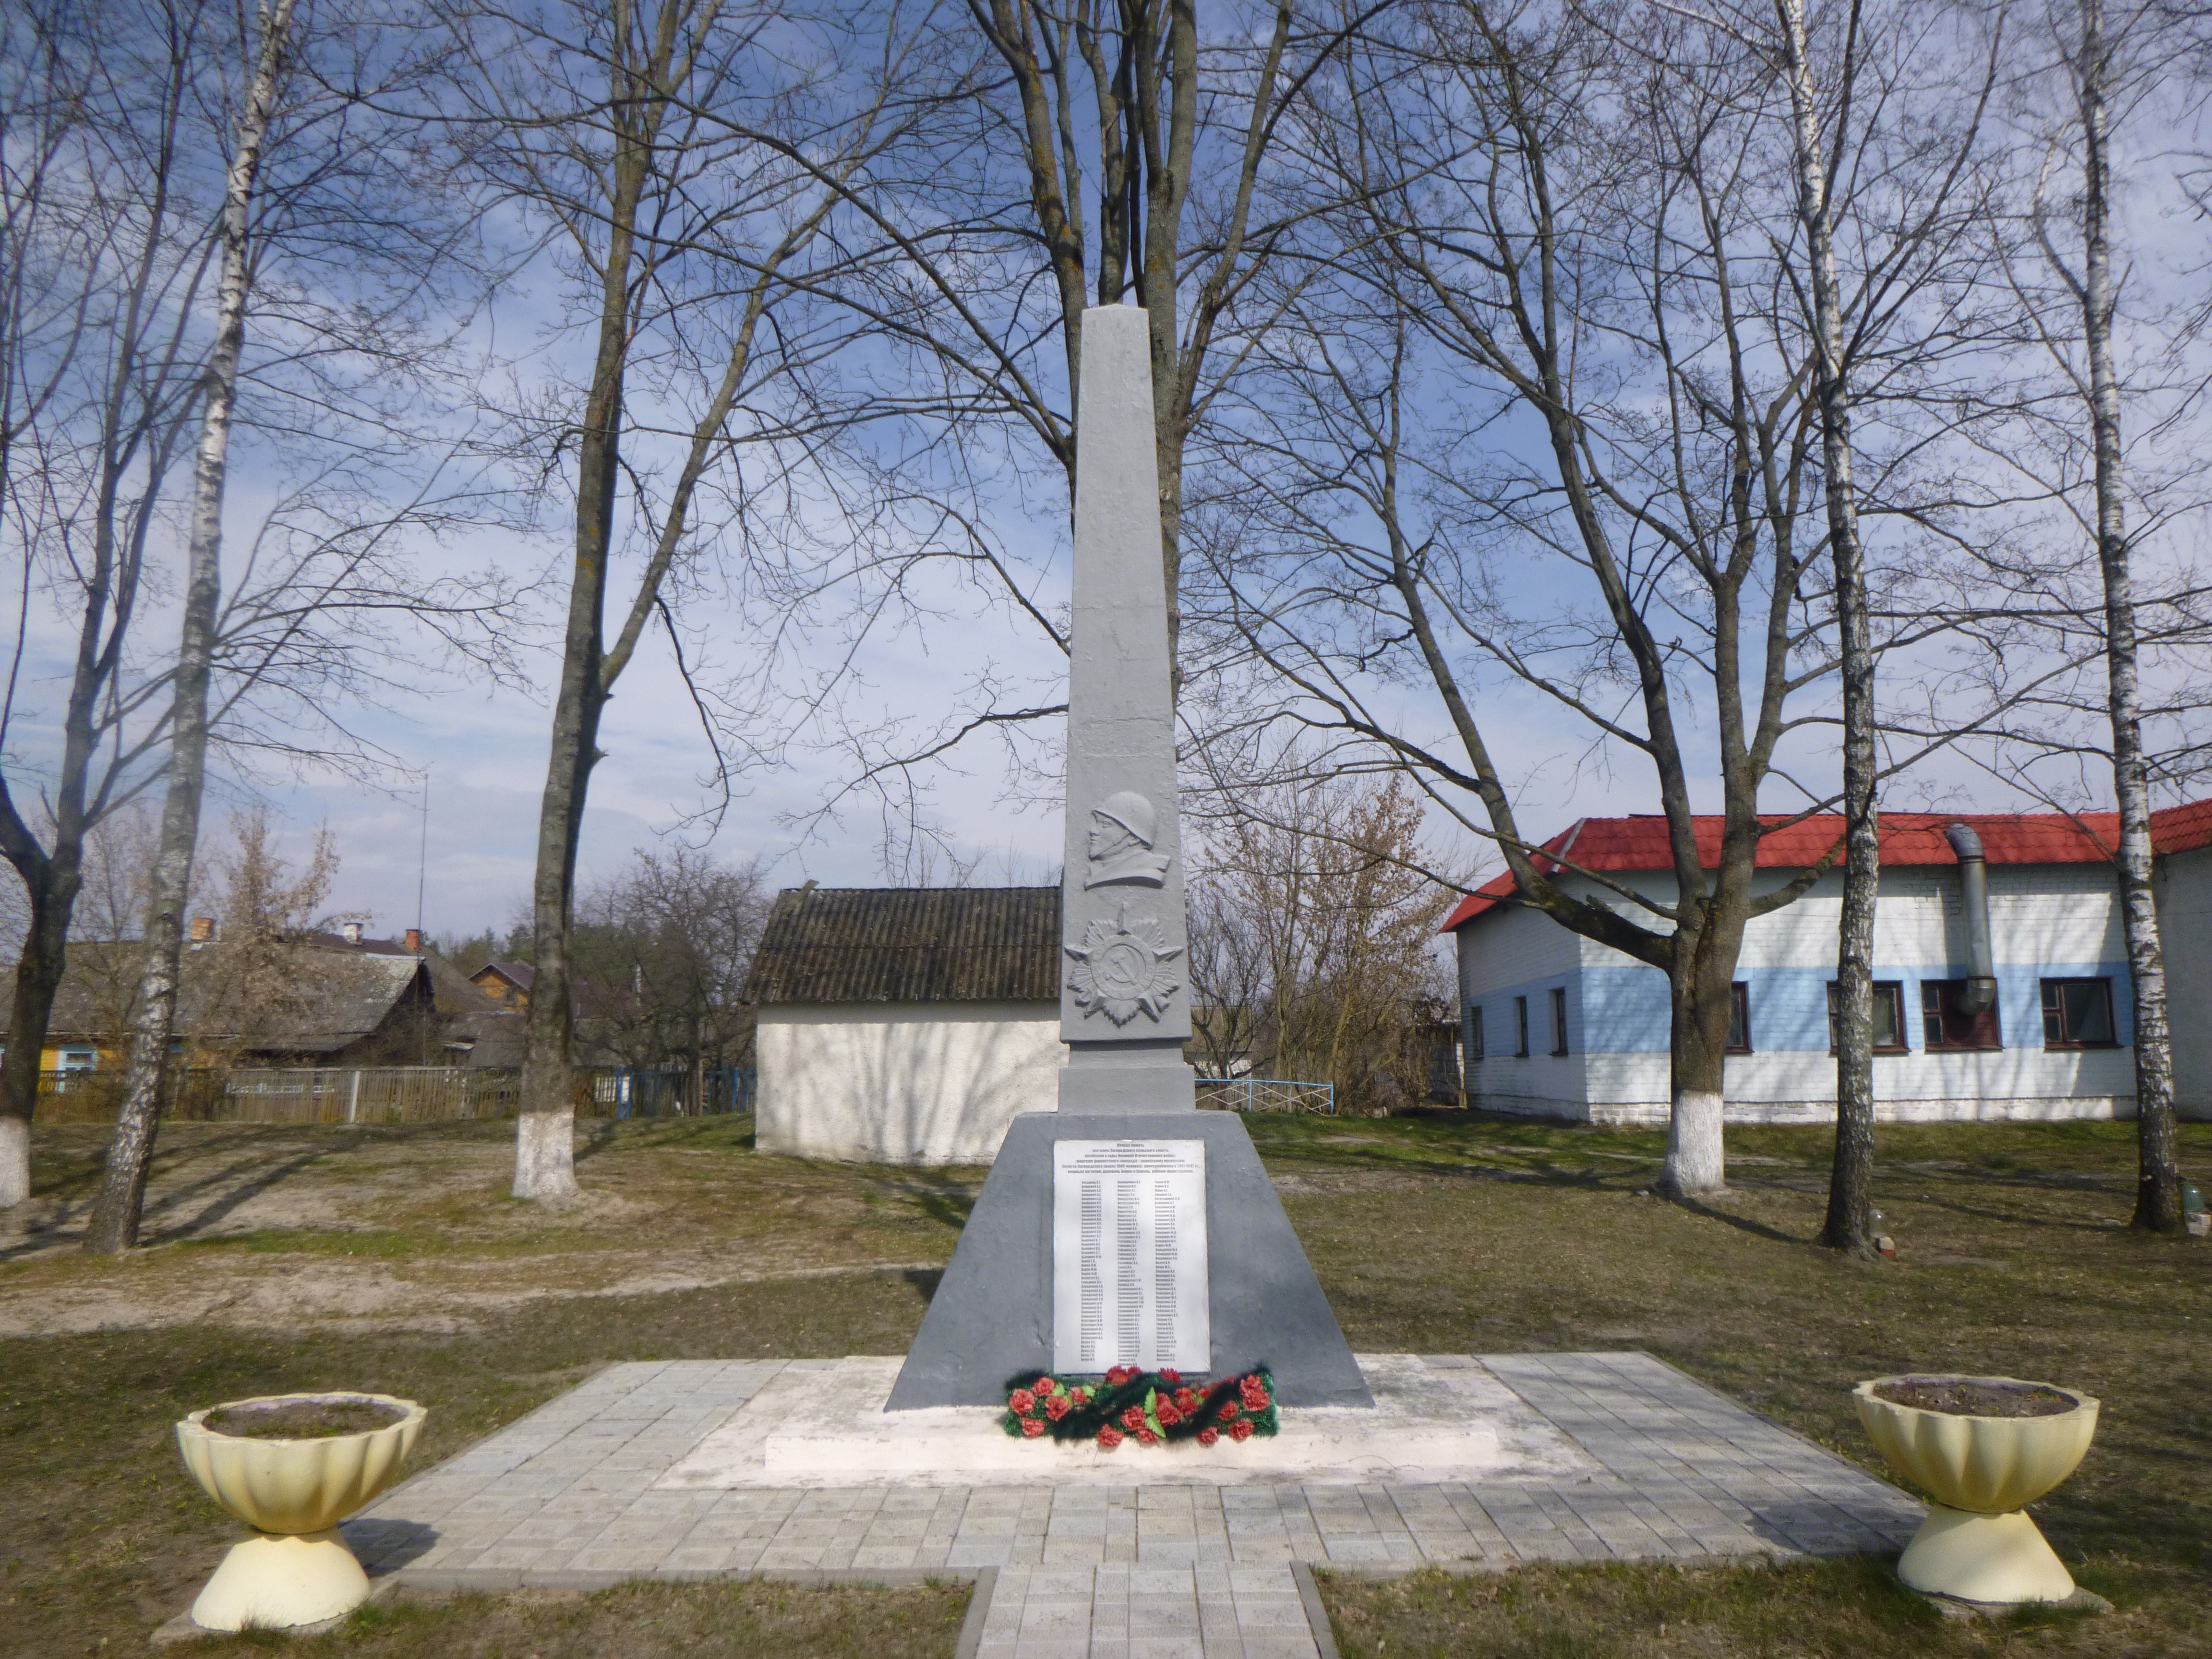 Памятник Землякам, расположенная в д. Погост-Загородский, Пинский район, Брестская область